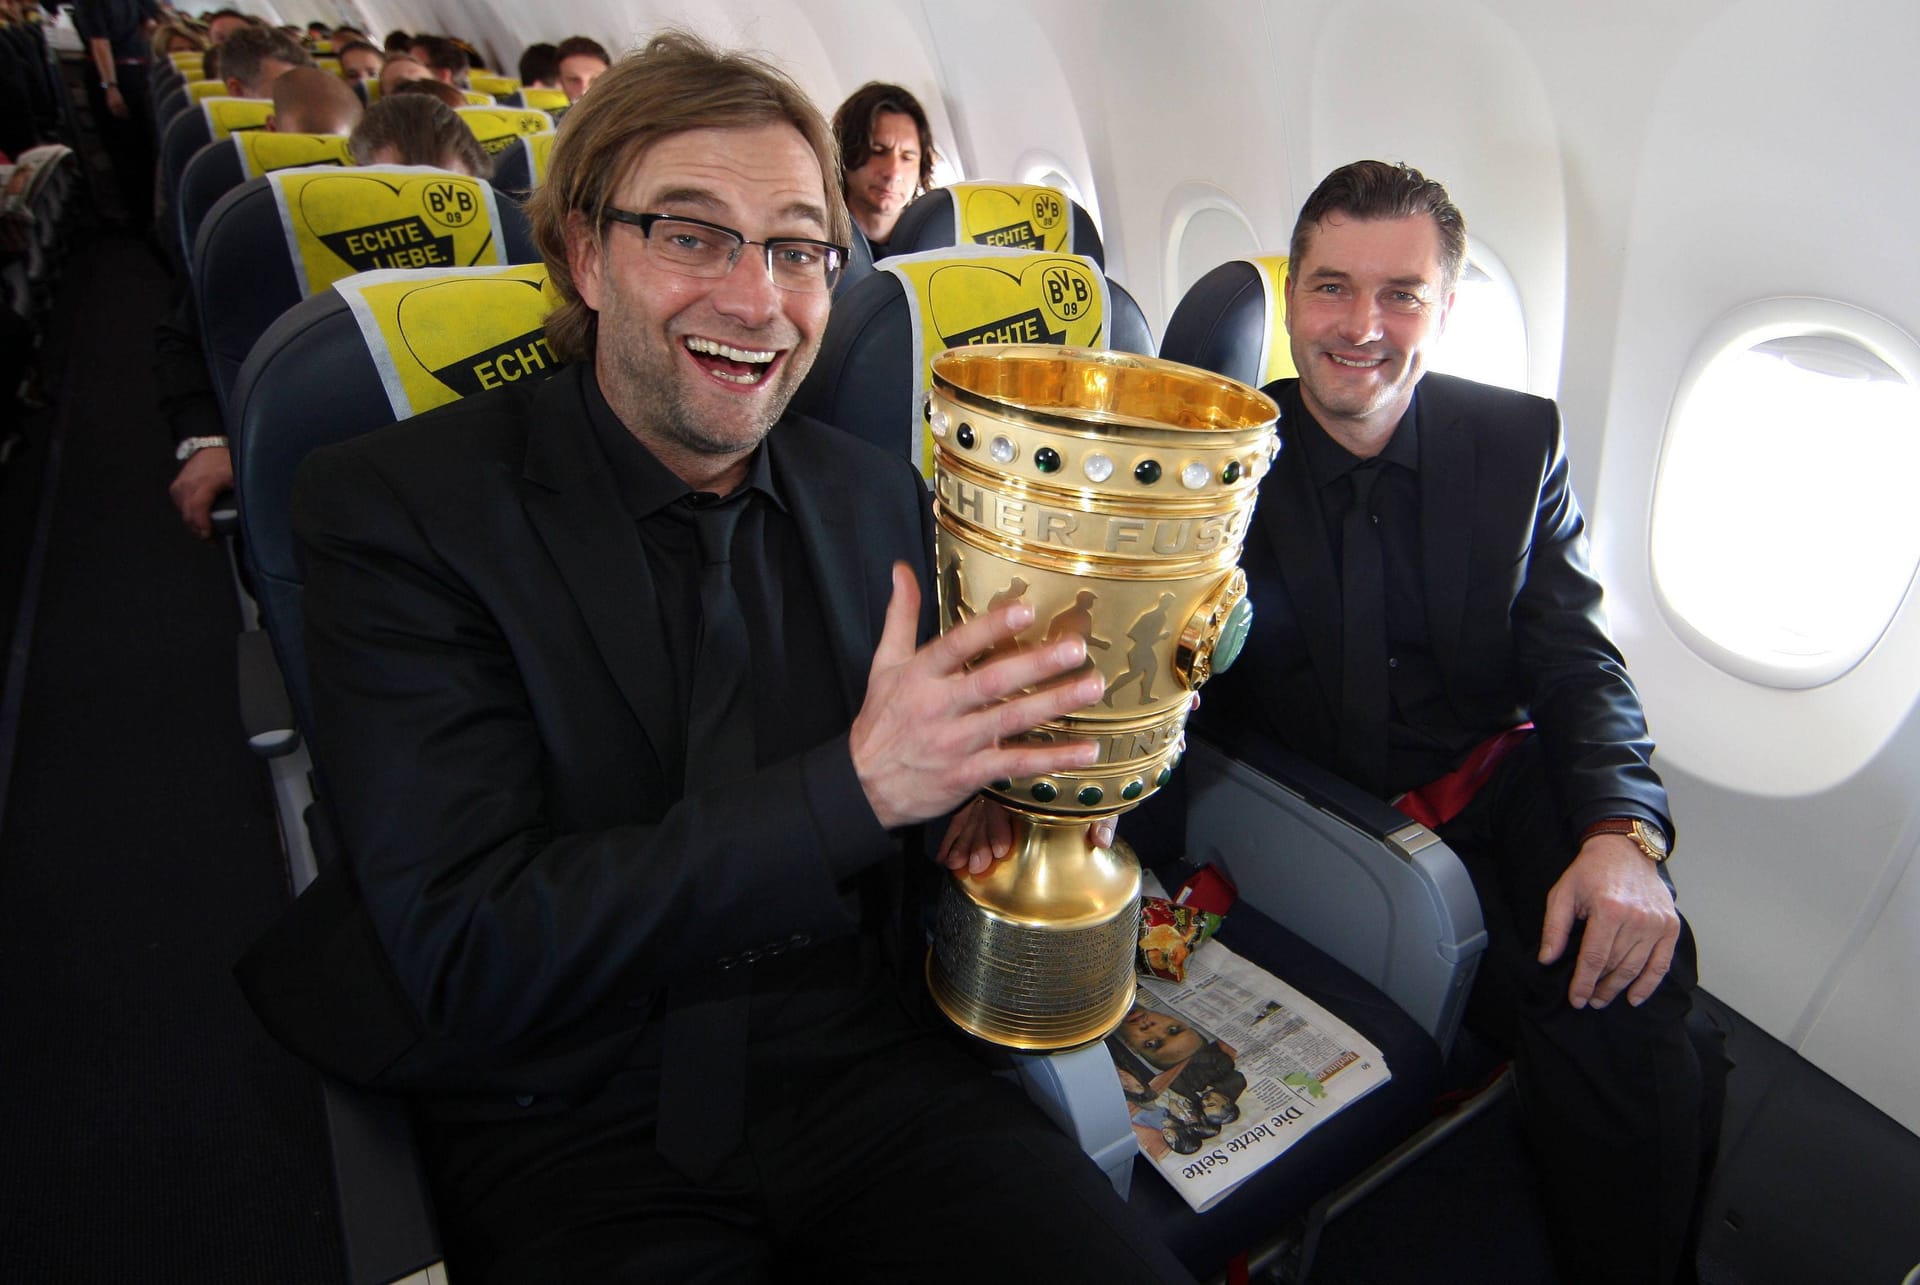 Ein Jahr später setzen Klopp und der BVB noch einen drauf. Den Dortmundern gelingt in der Bundesliga die Titelverteidigung. Dazu gewinnen sie auch noch den DFB-Pokal, demütigen im Finale den FC Bayern mit einem furiosen 5:2. Klopp ist nun als Trainer auch noch Double-Sieger.